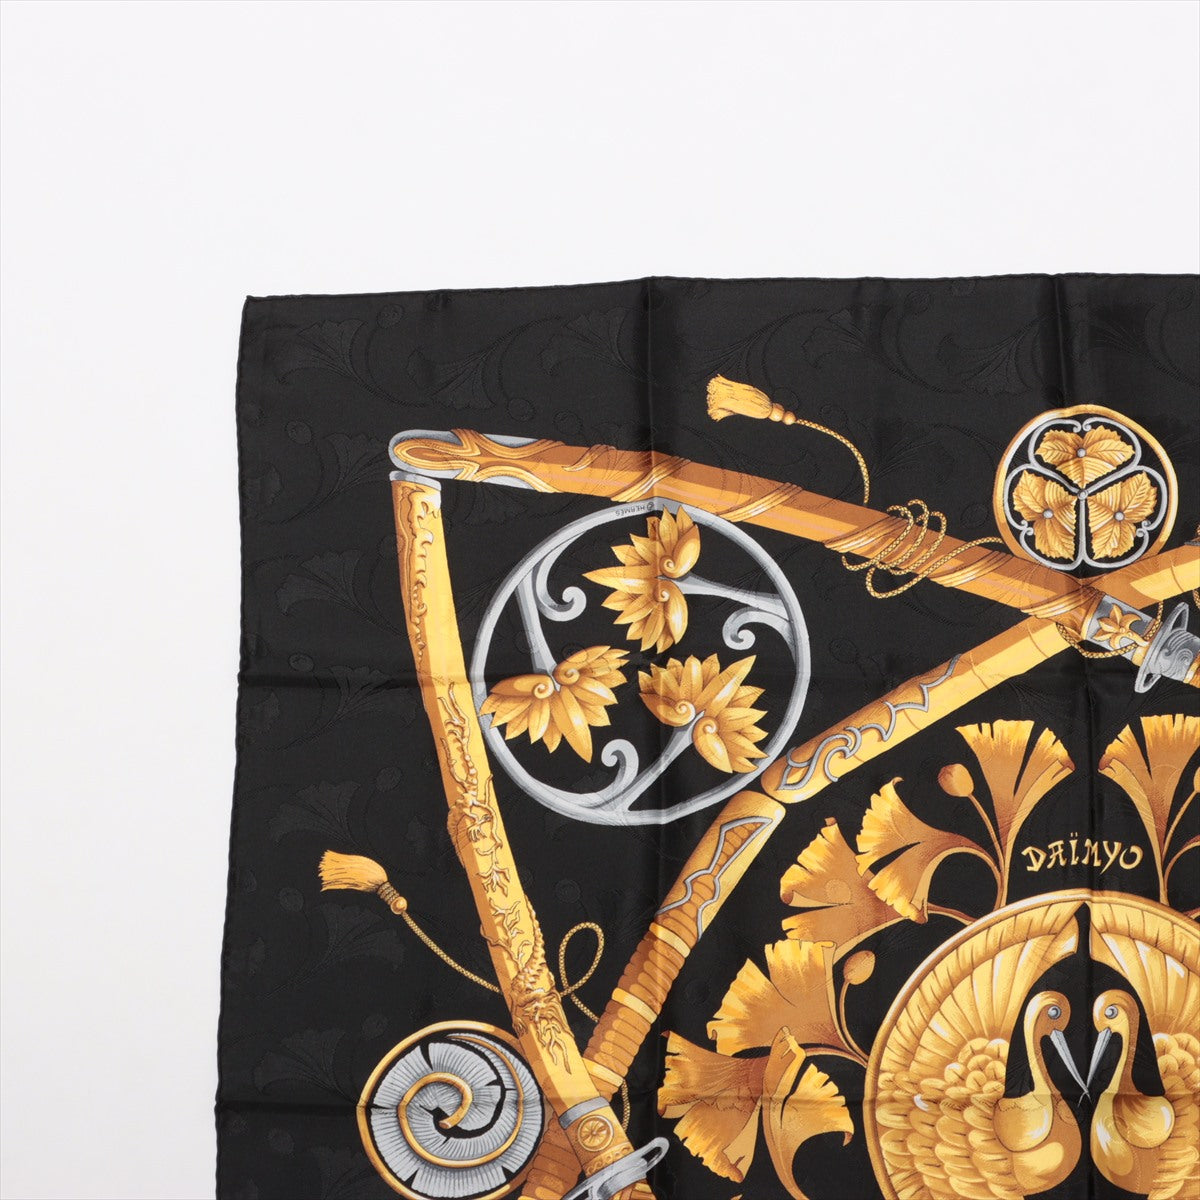 エルメス カレ90 DAIMYO PRINCES DU SOLEIL LEVANT 大名 日出る国の皇子 スカーフ シルク ブラック